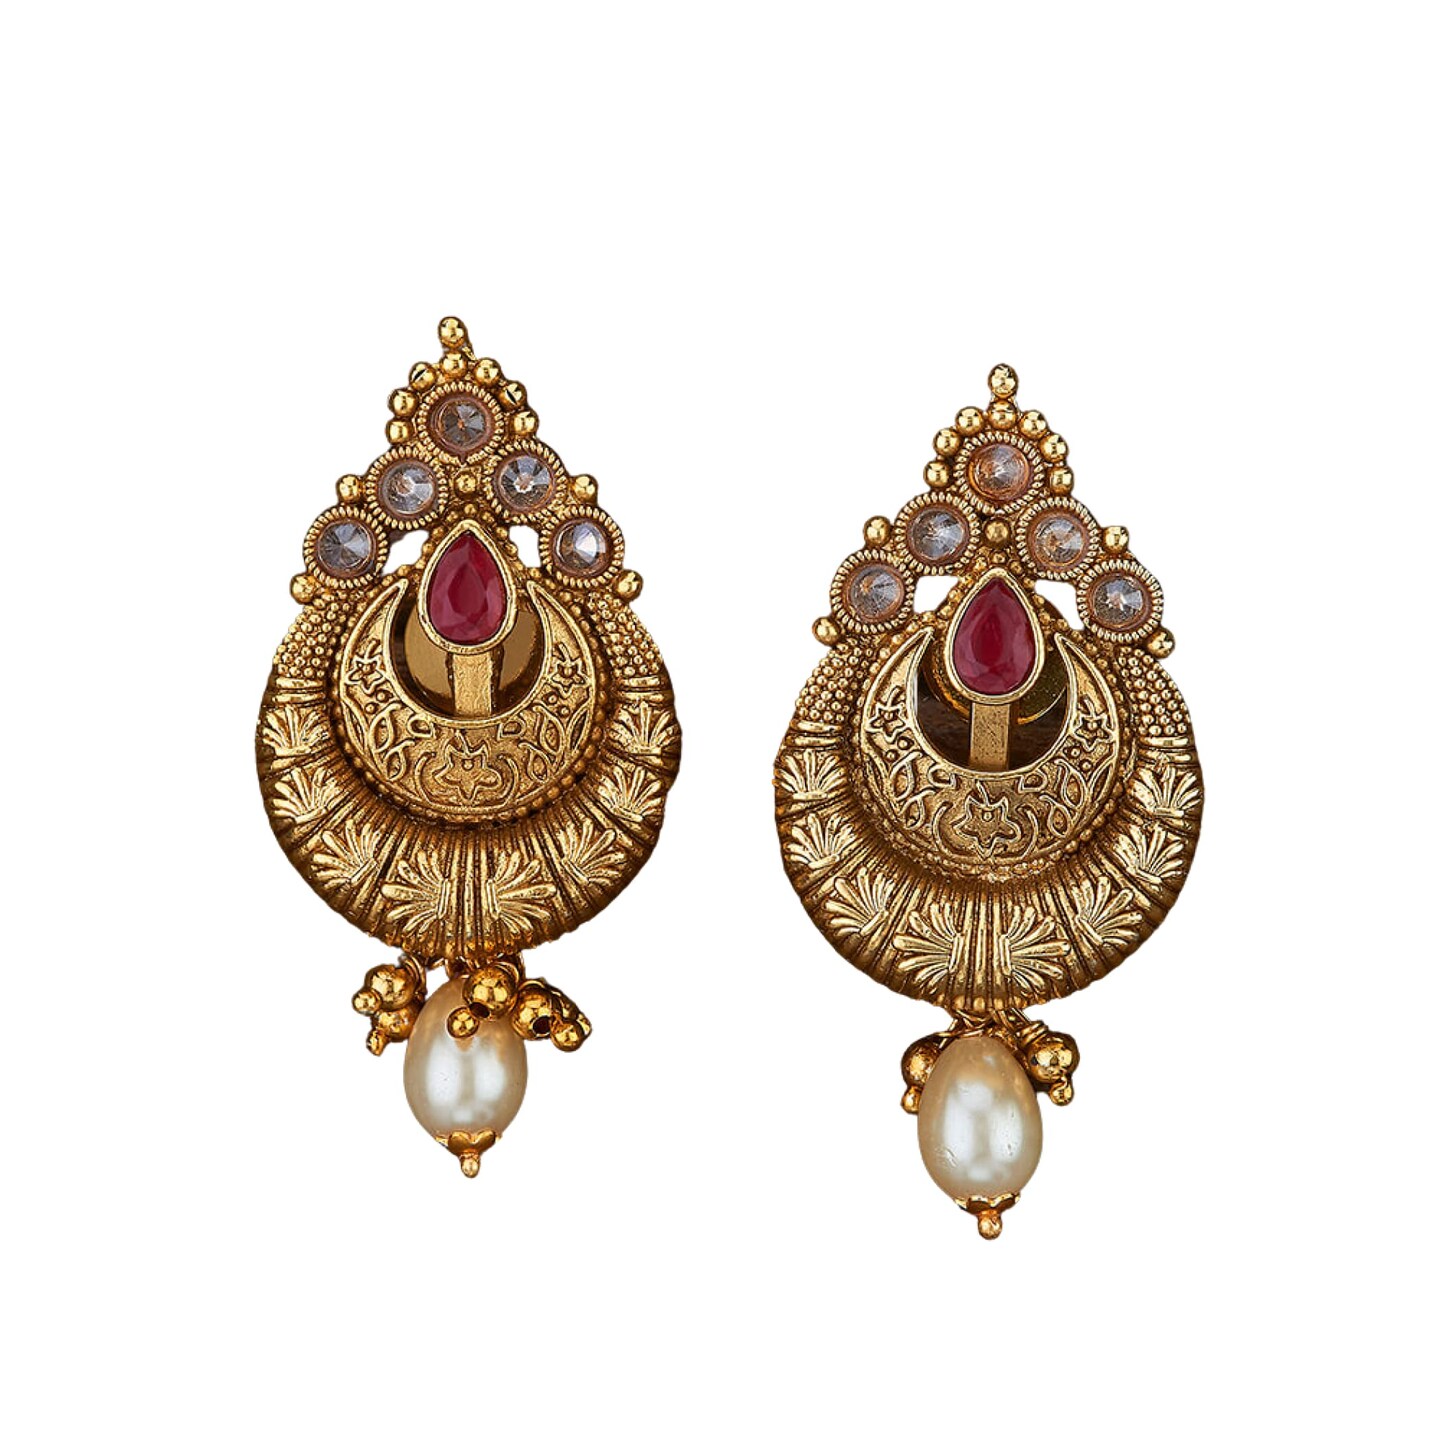 Buy Glory Lotus Stud Earrings in White Enamel Online in India | Zariin